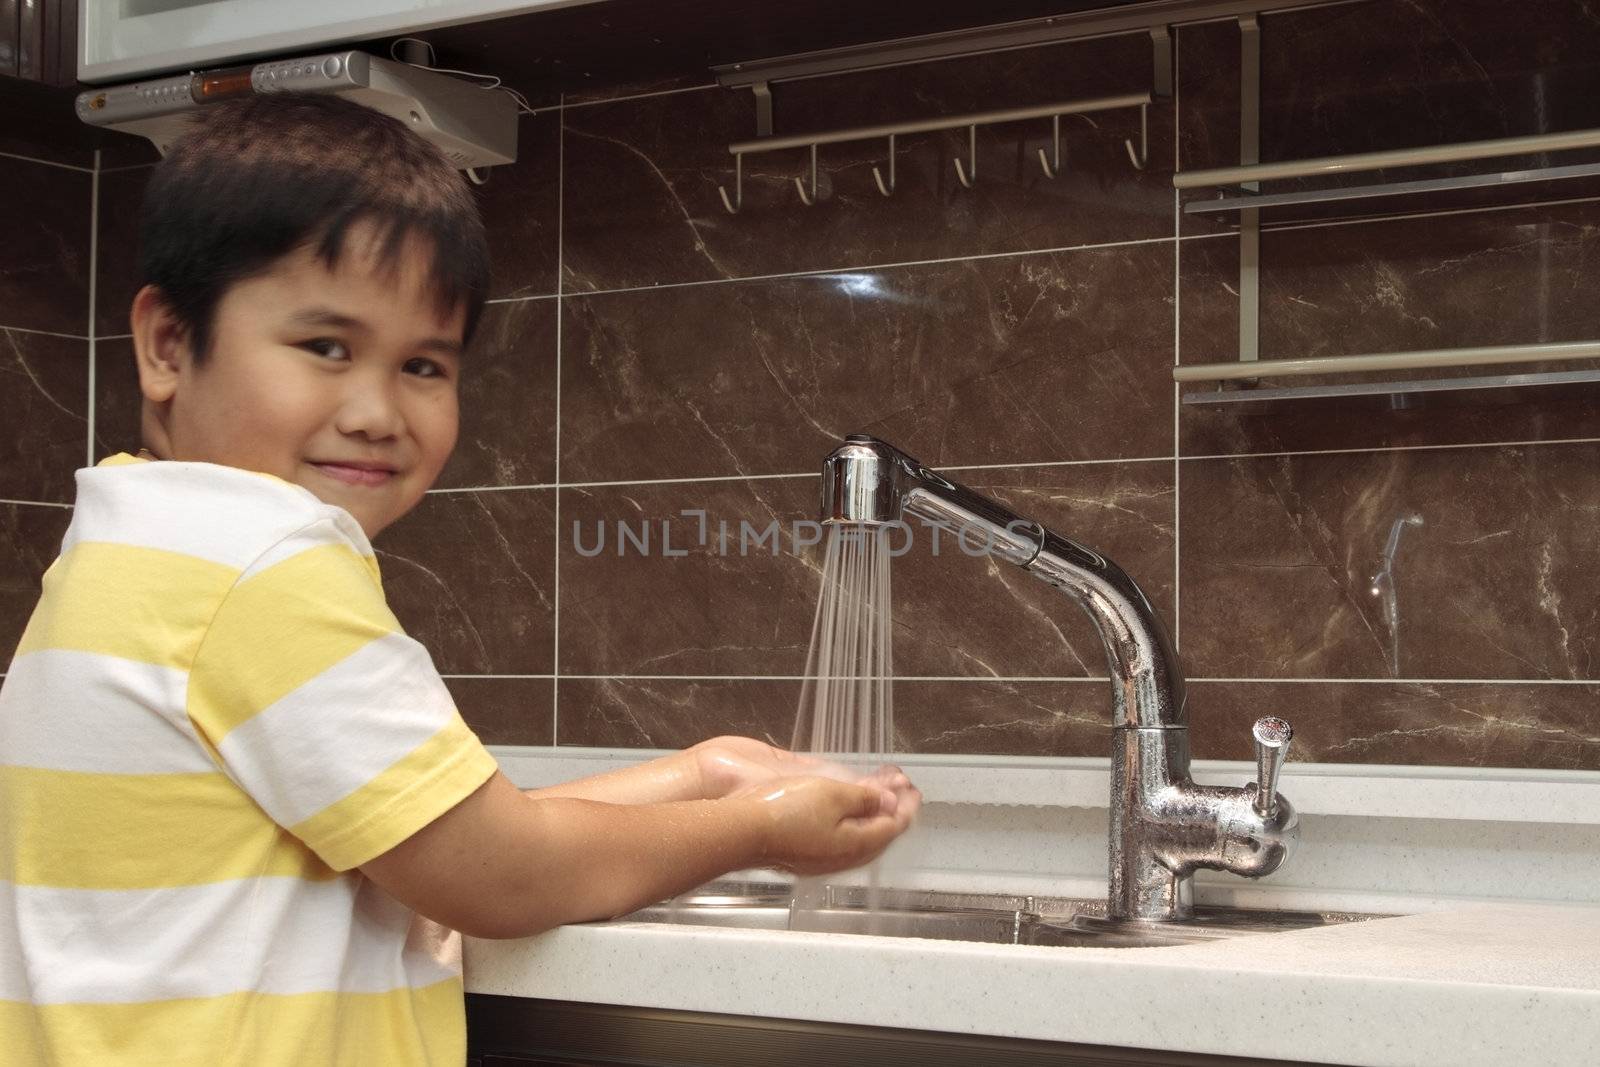 Child washing hands in sink in a modern kitchen.